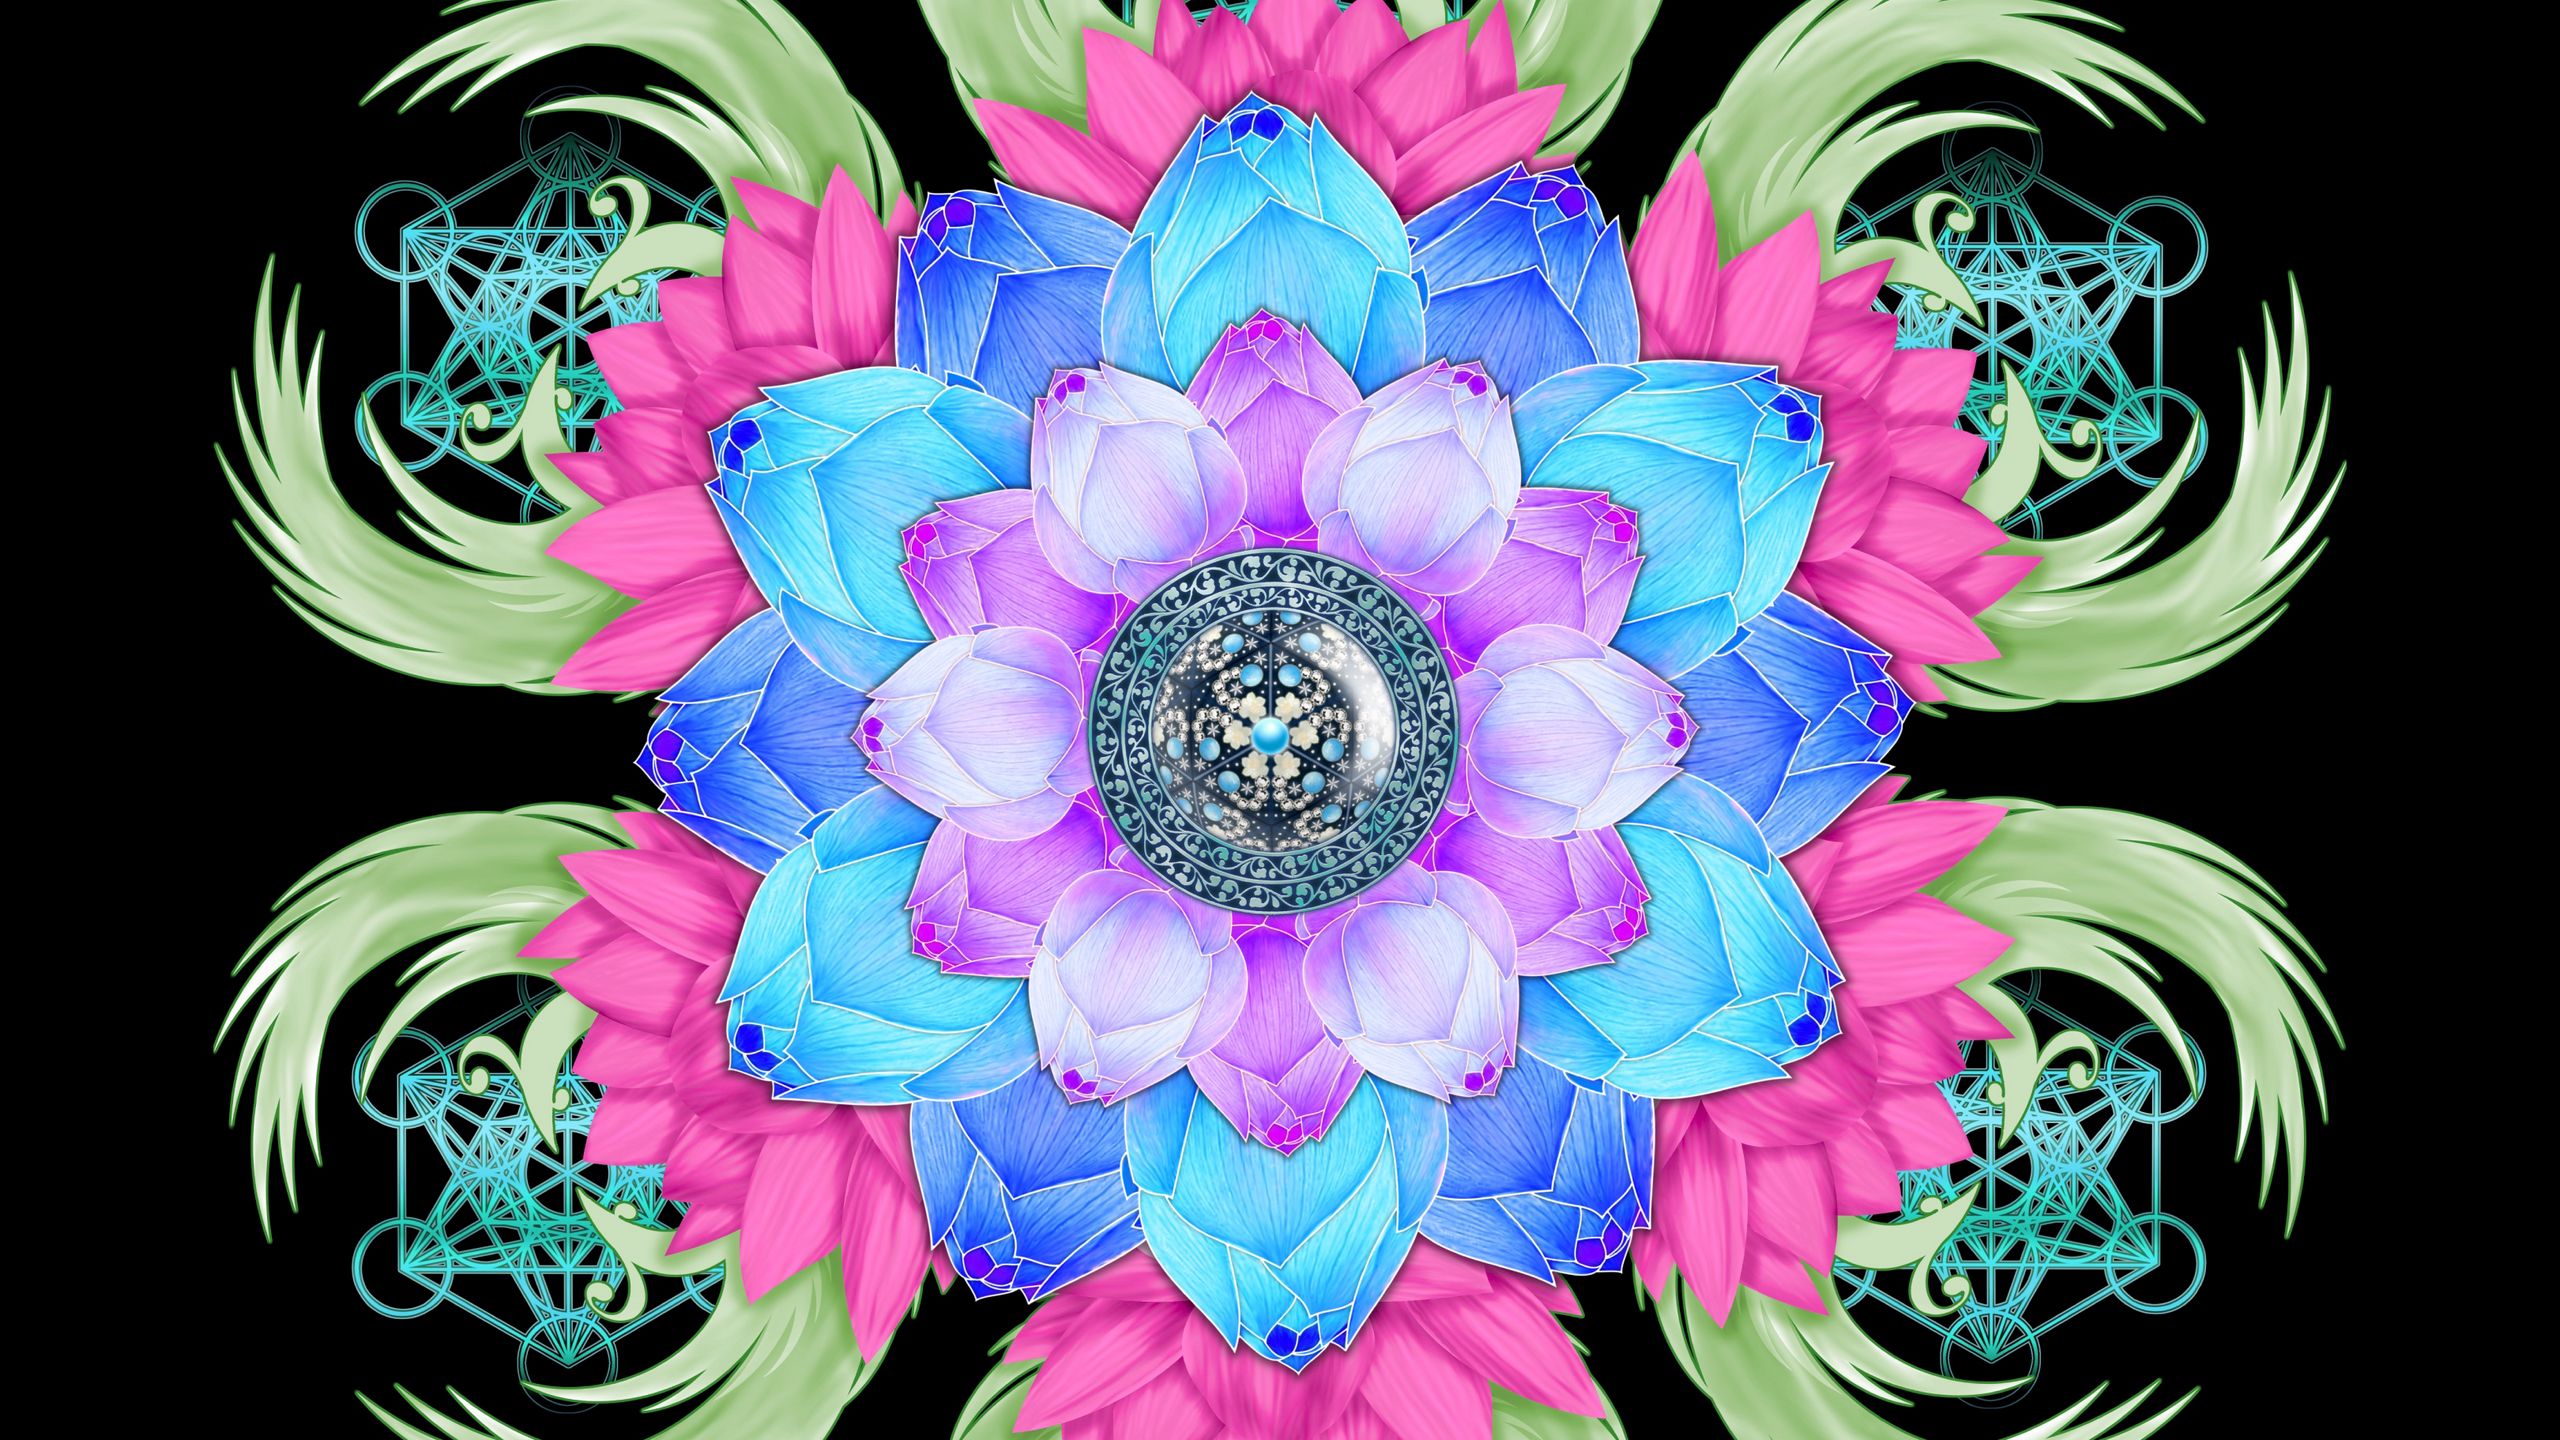 Download wallpaper 2560x1440 mandala, lotus, patterns, flower